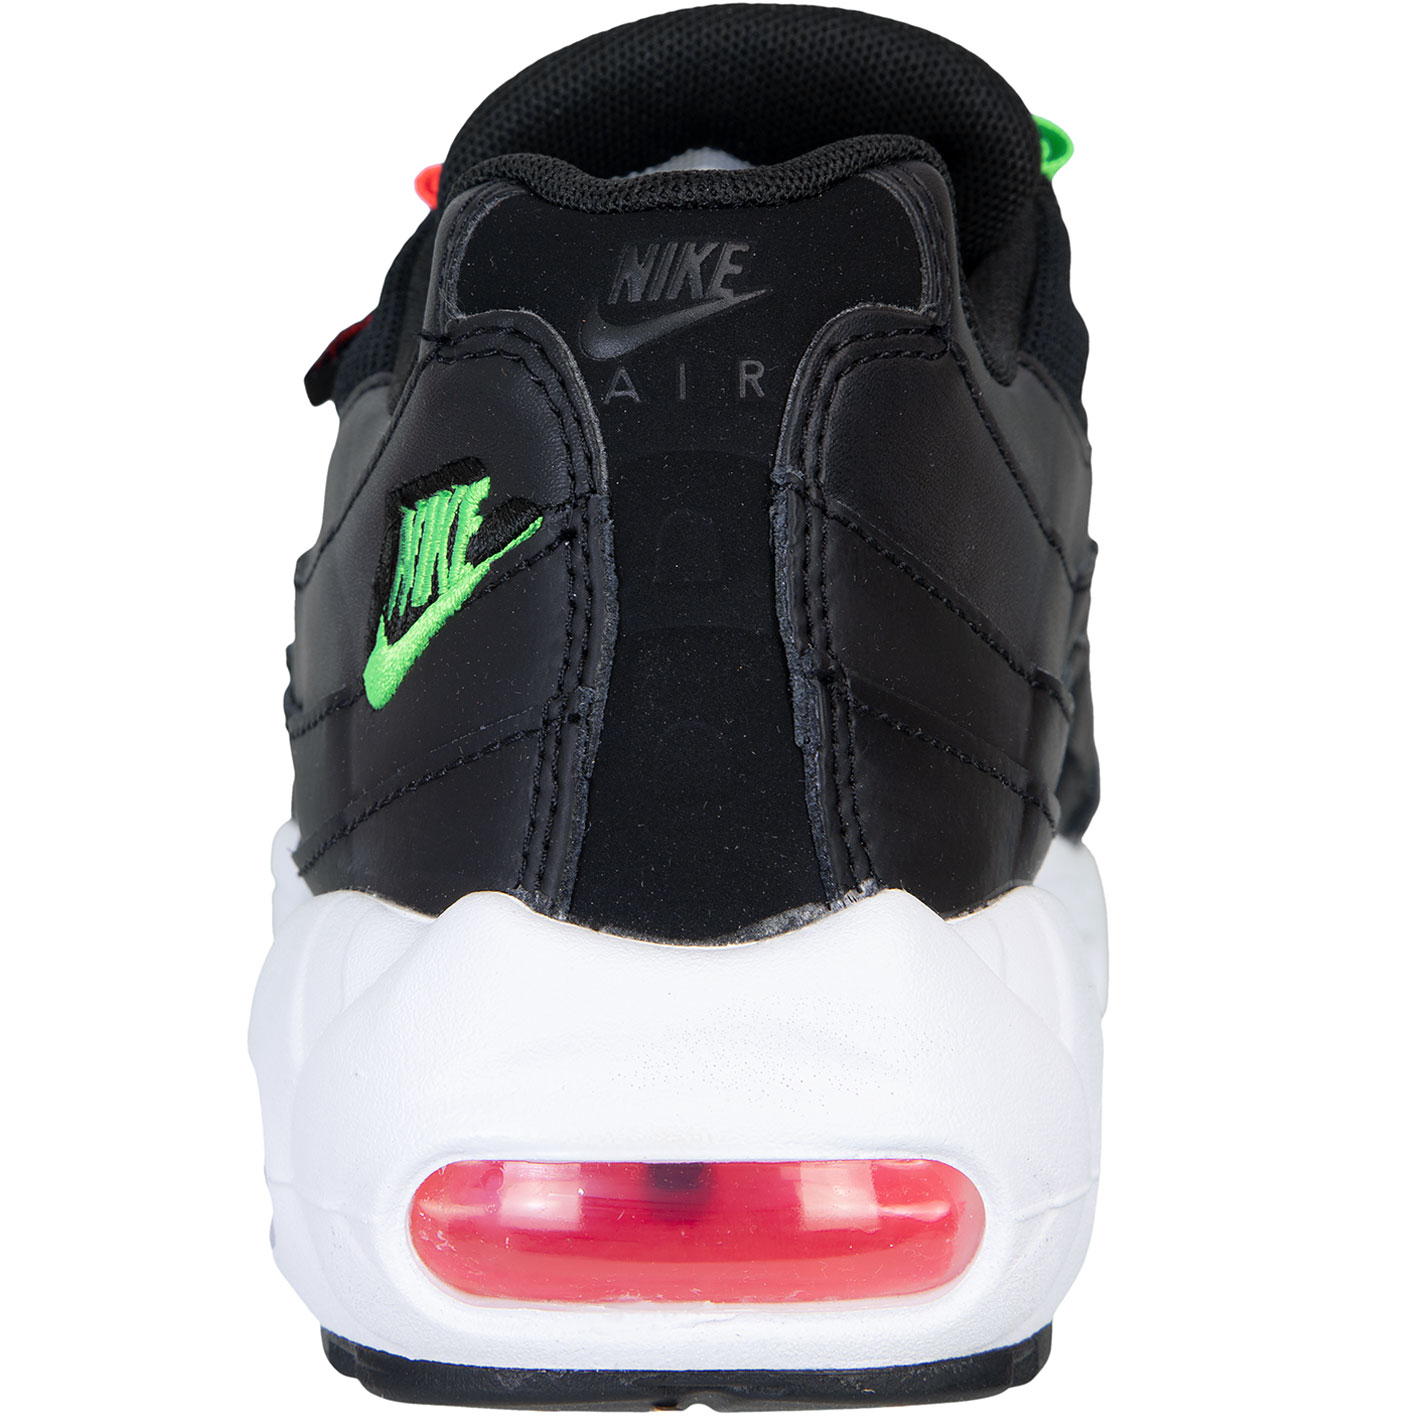 ☆ Nike Air Max 95 Essential Damen Sneaker schwarz - hier bestellen!